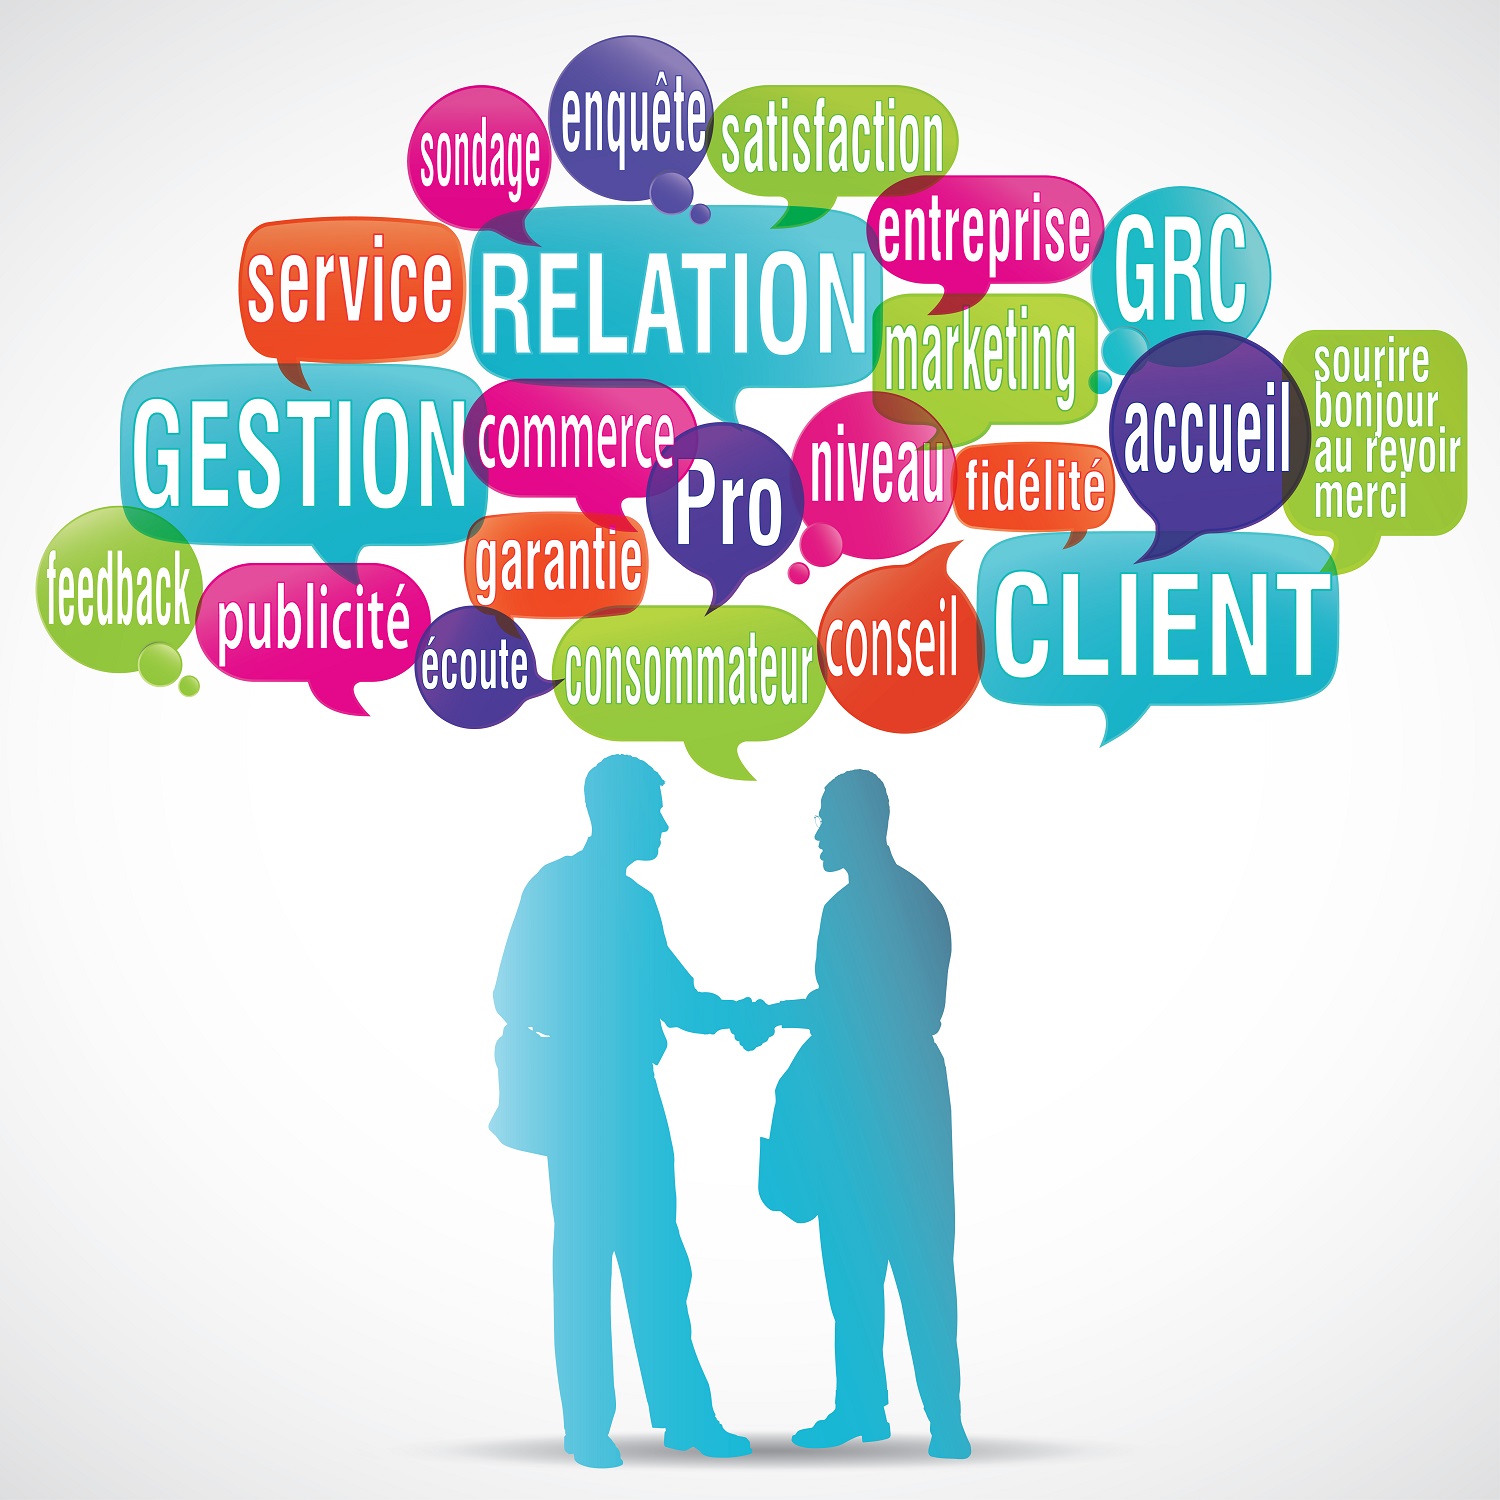 Une relation client qui bouge : quelles nouvelles compétences pour les conseillers ?